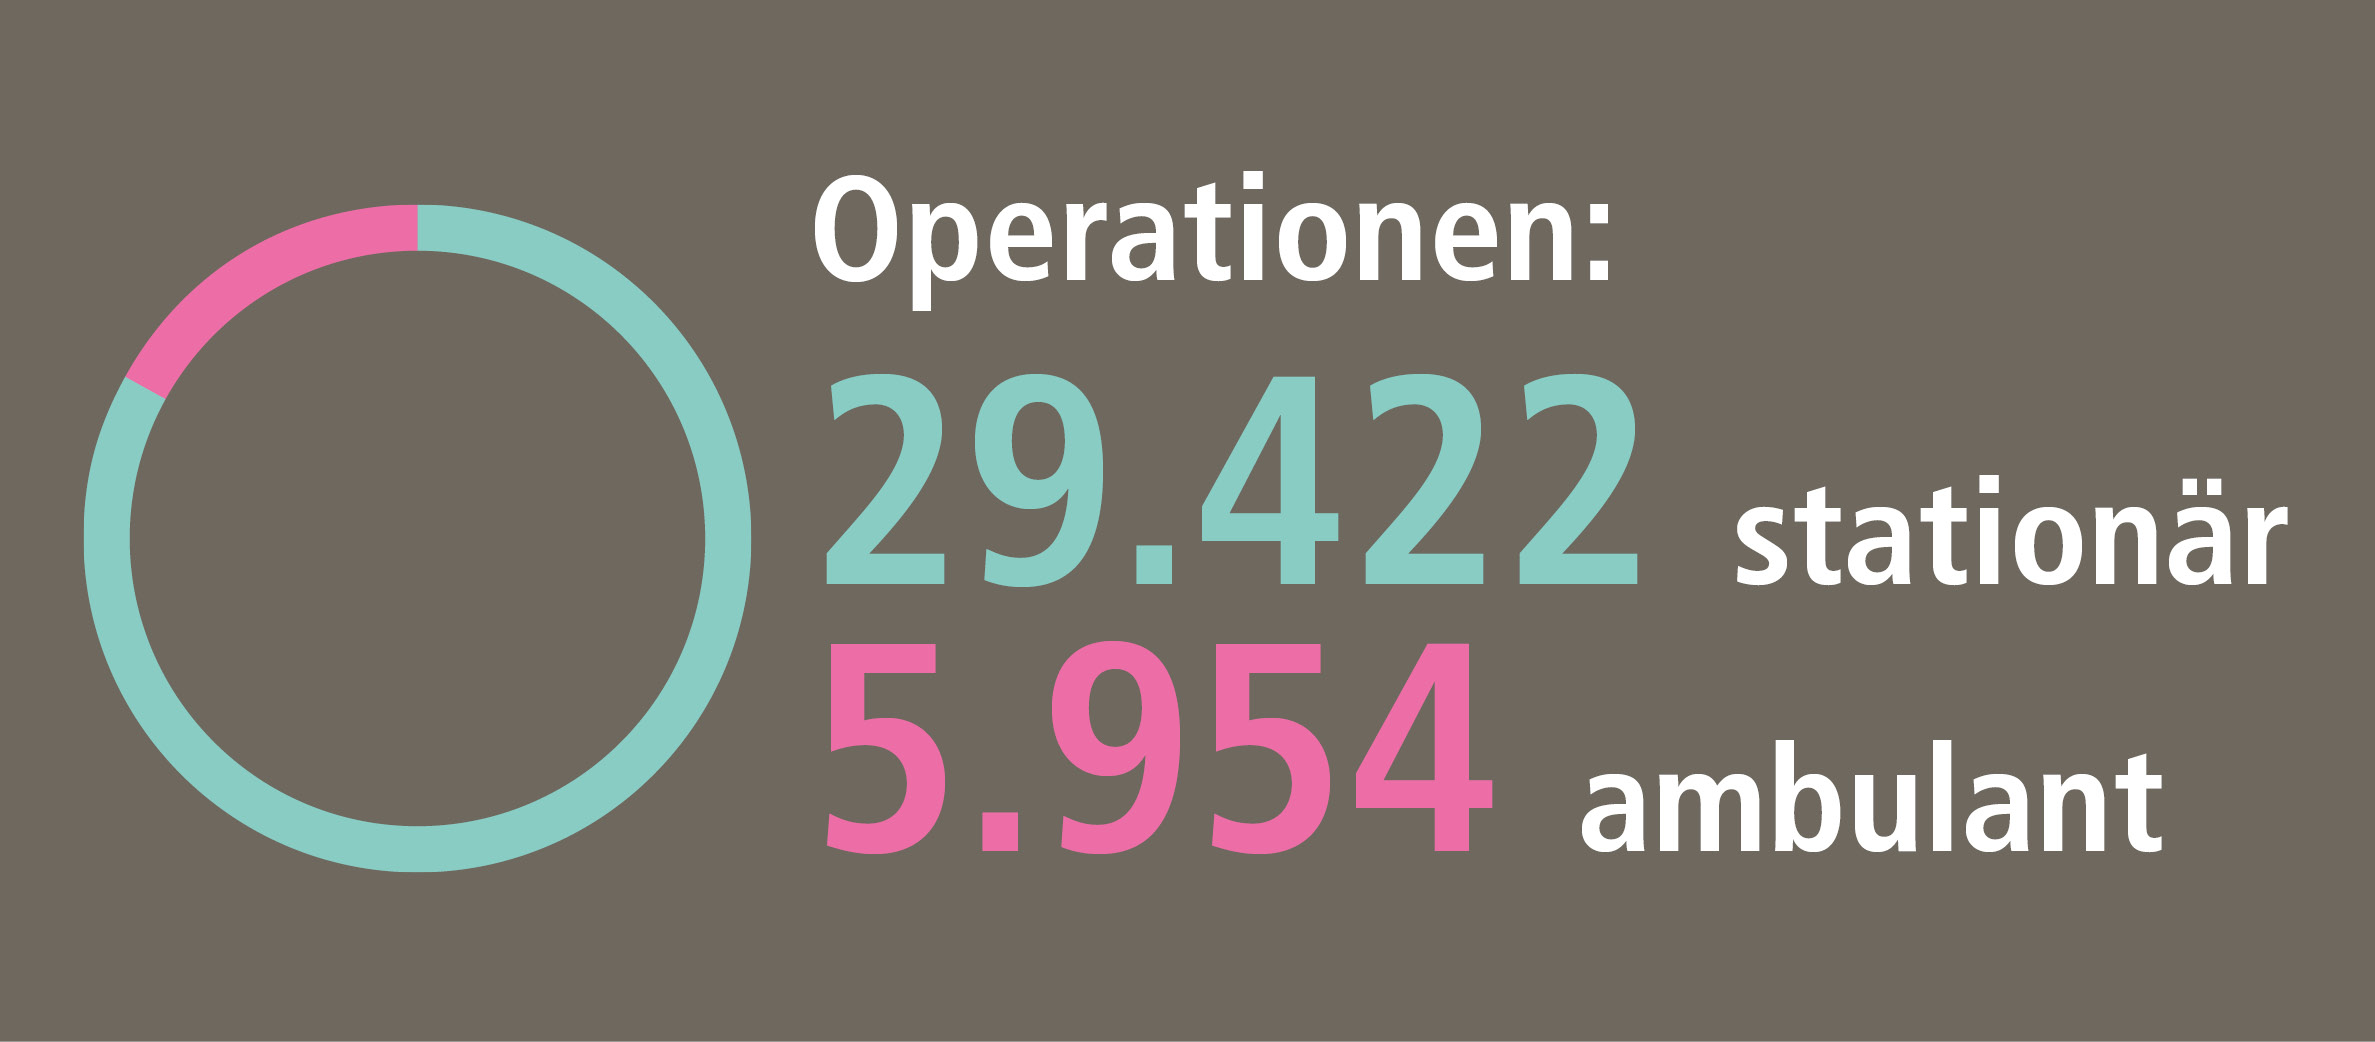 Jahresbericht 2022: Zahl der Operationen